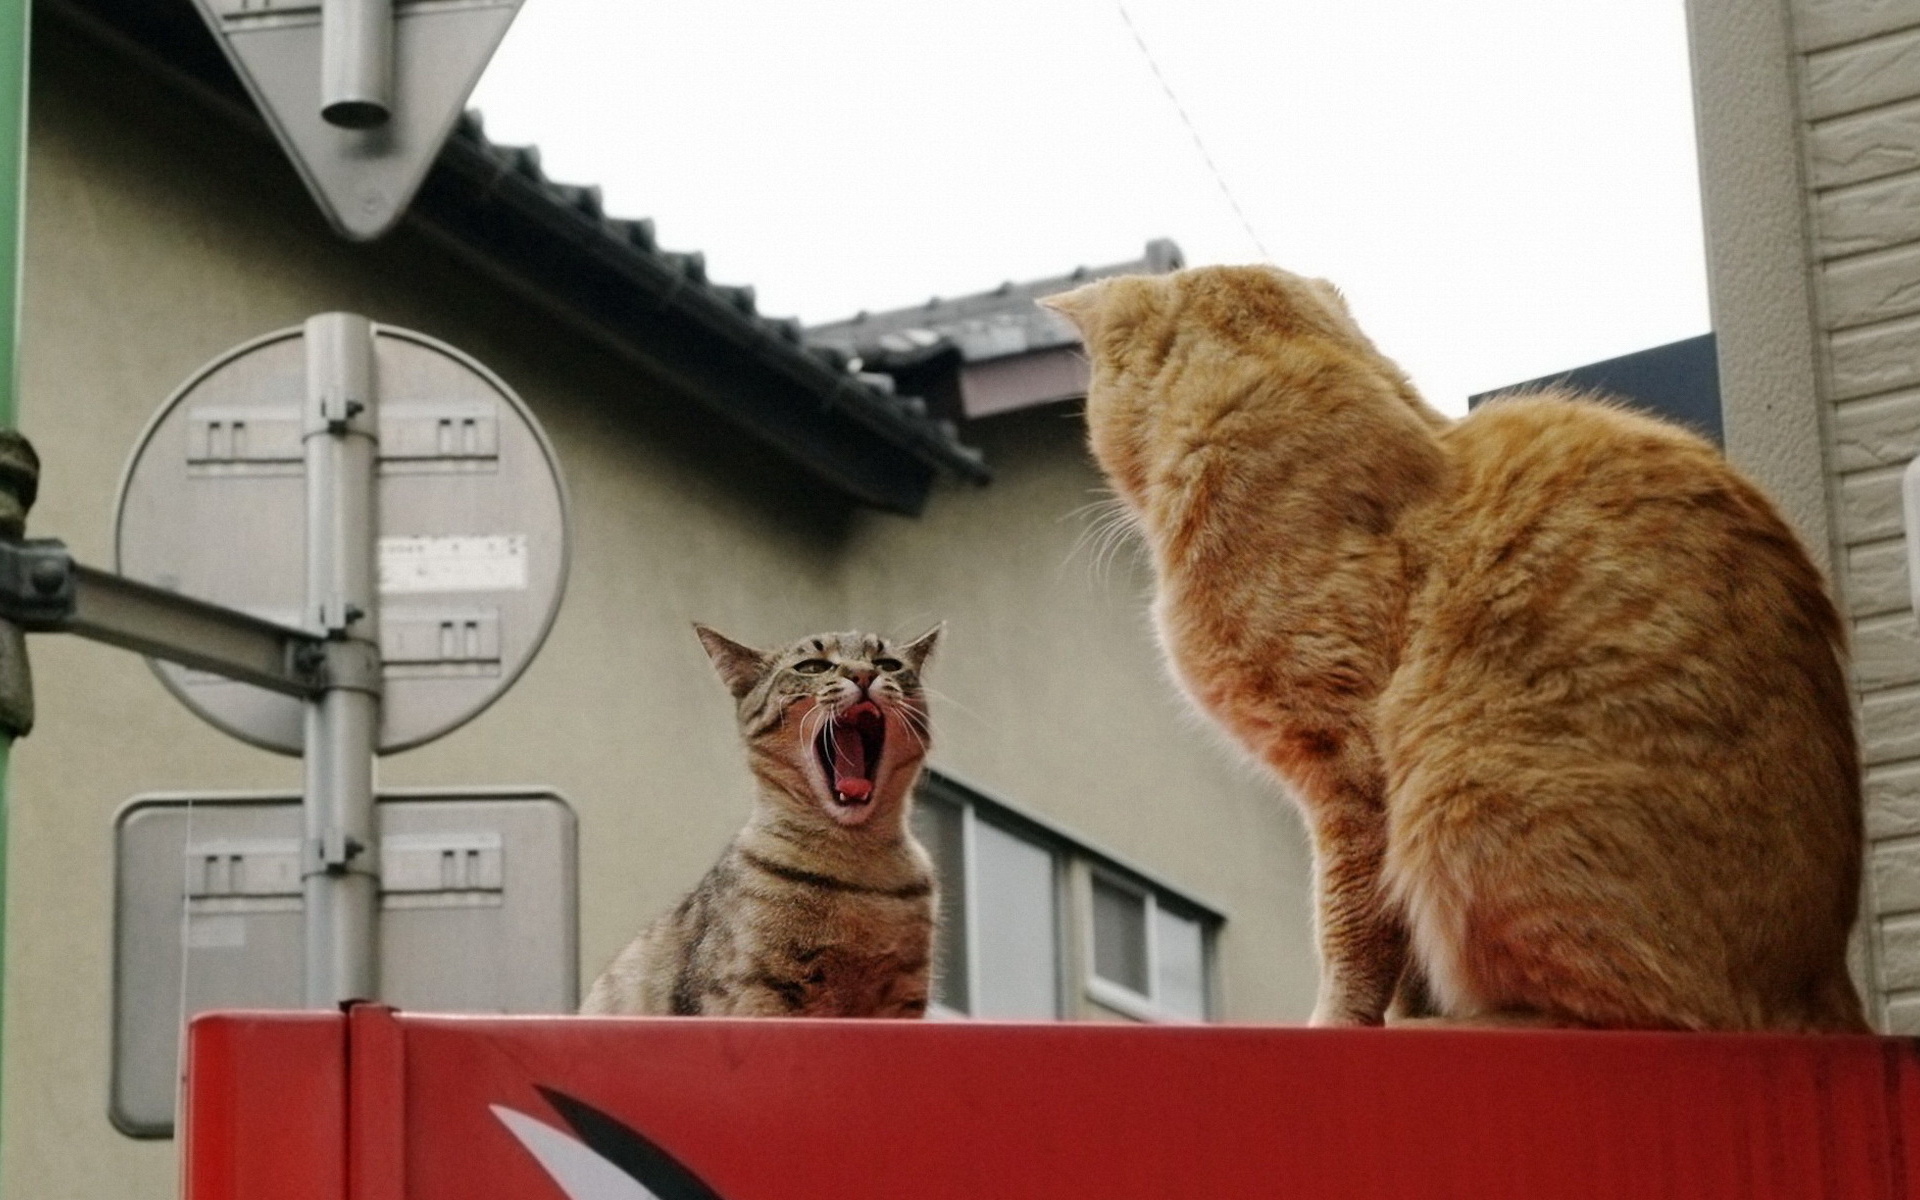 Descarga gratuita de fondo de pantalla para móvil de Animales, Gatos, Gato.